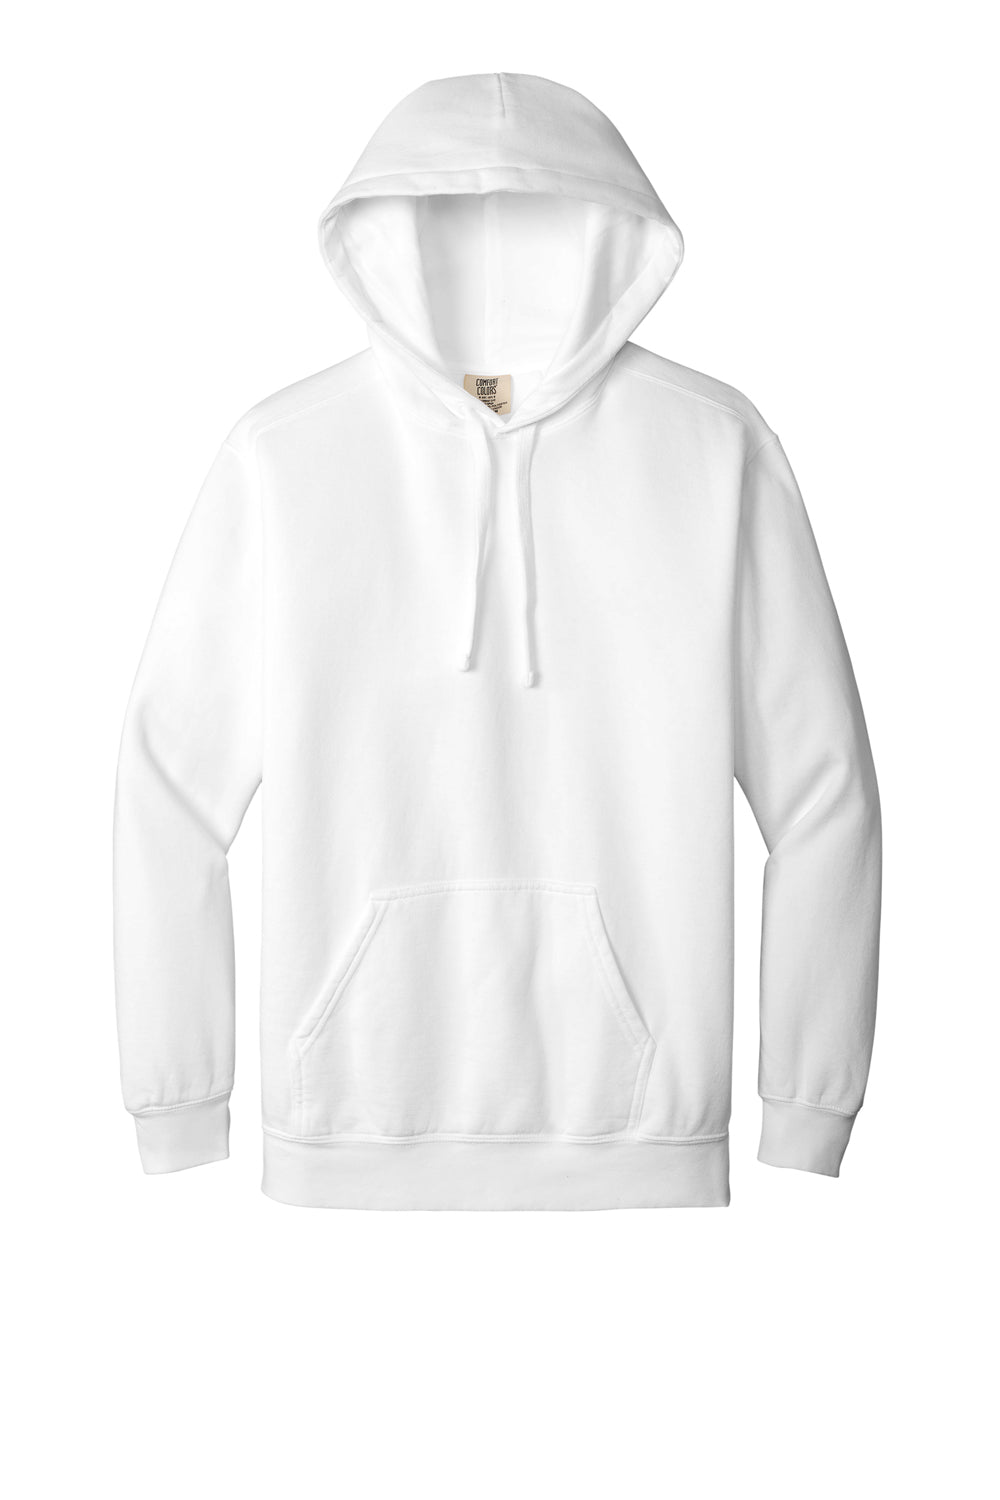 Comfort Colors Mens Hooded Sweatshirt Hoodie White Flat Front